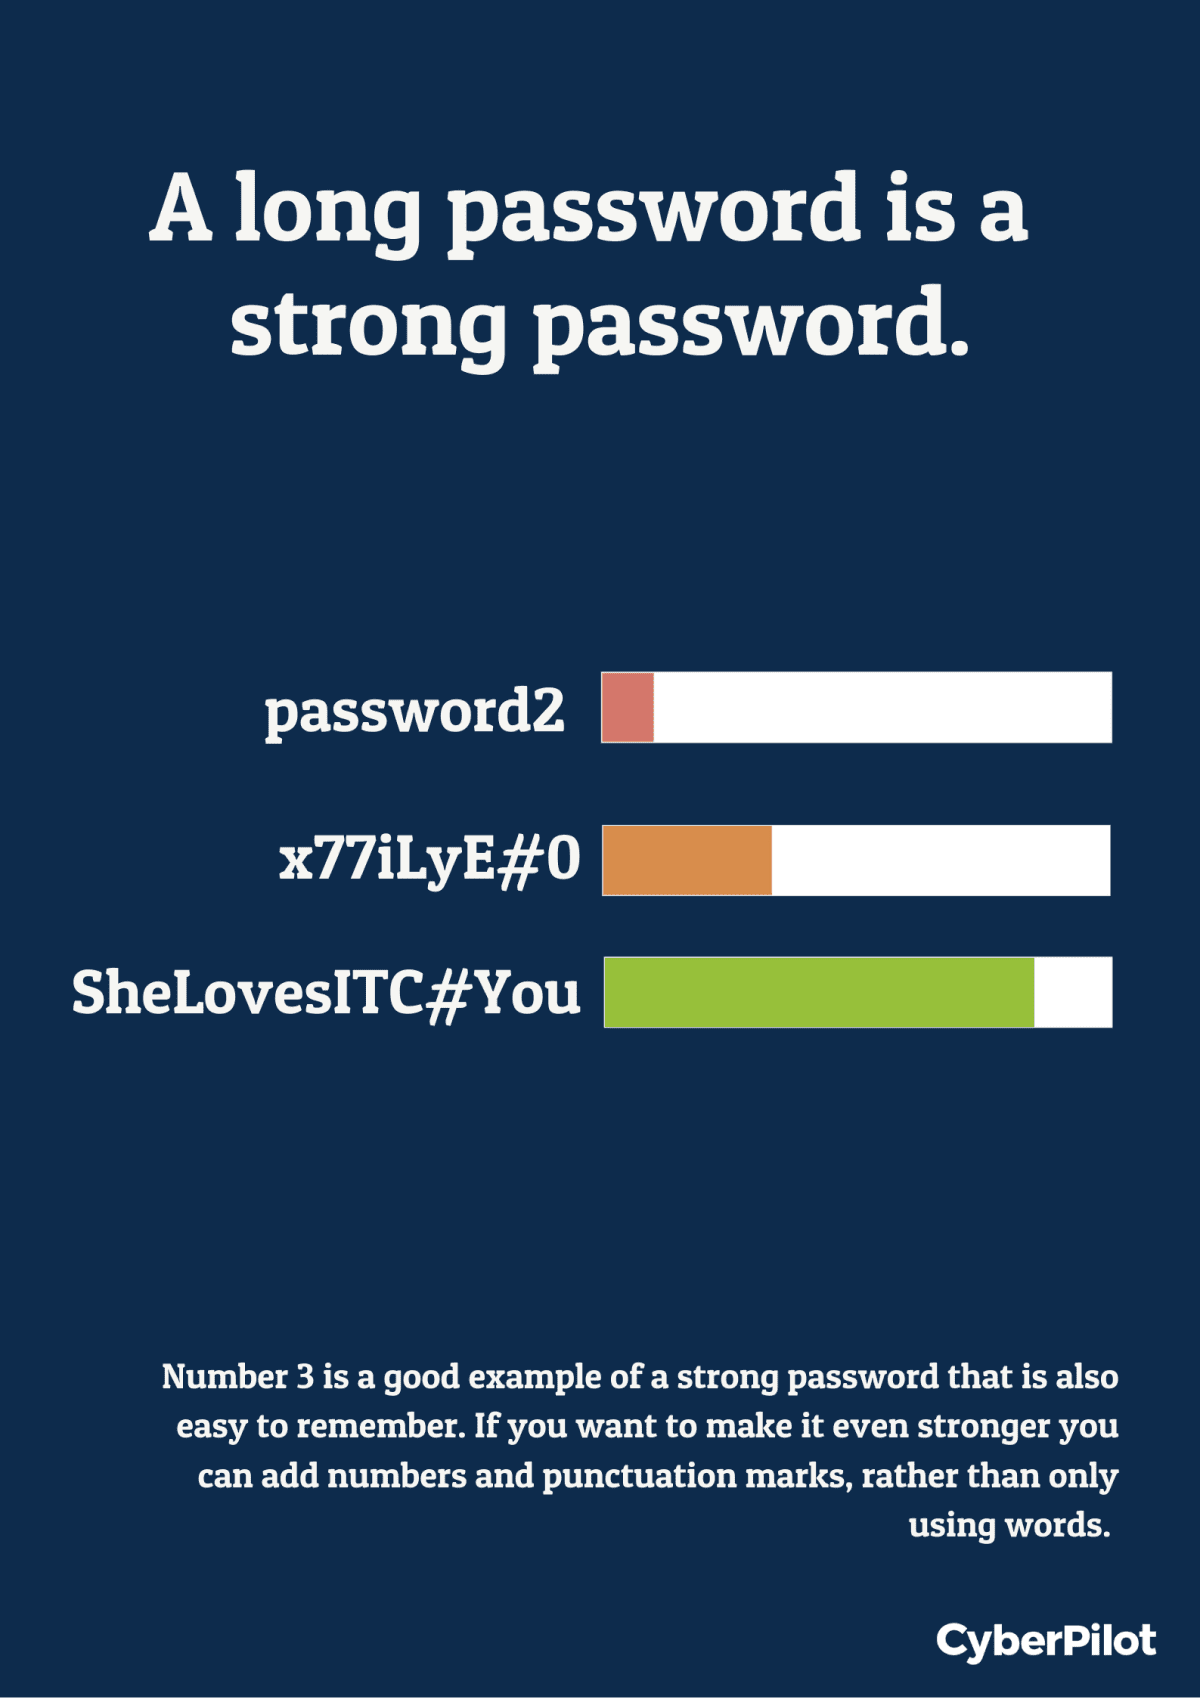 Password management training